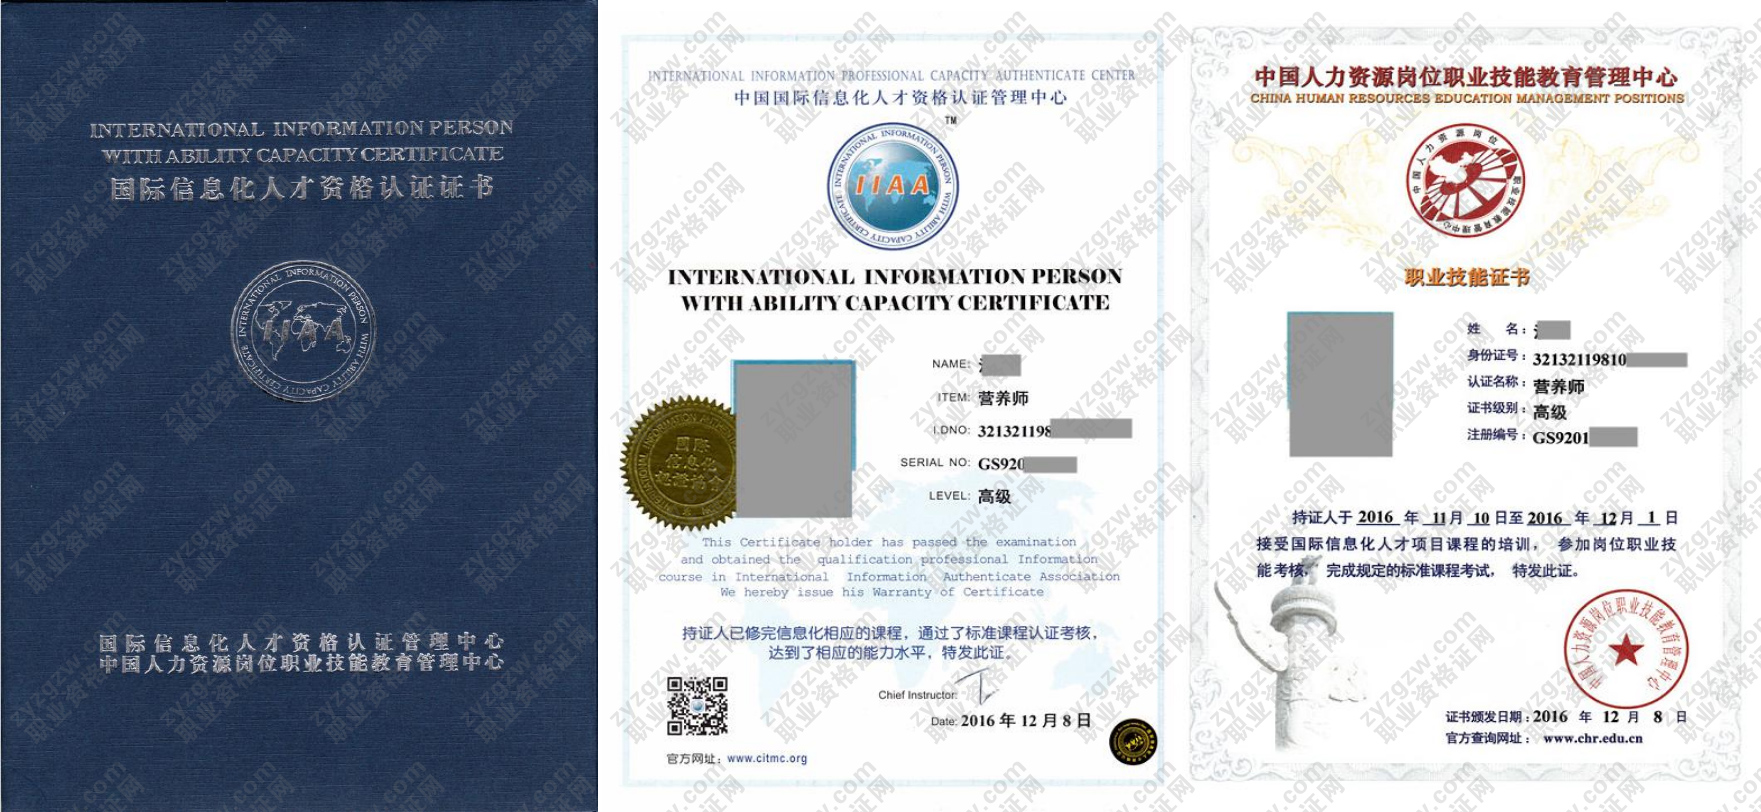 中国人力资源岗位职业技能教育管理中心 物业管理师 国际信息化人才资格认证证书